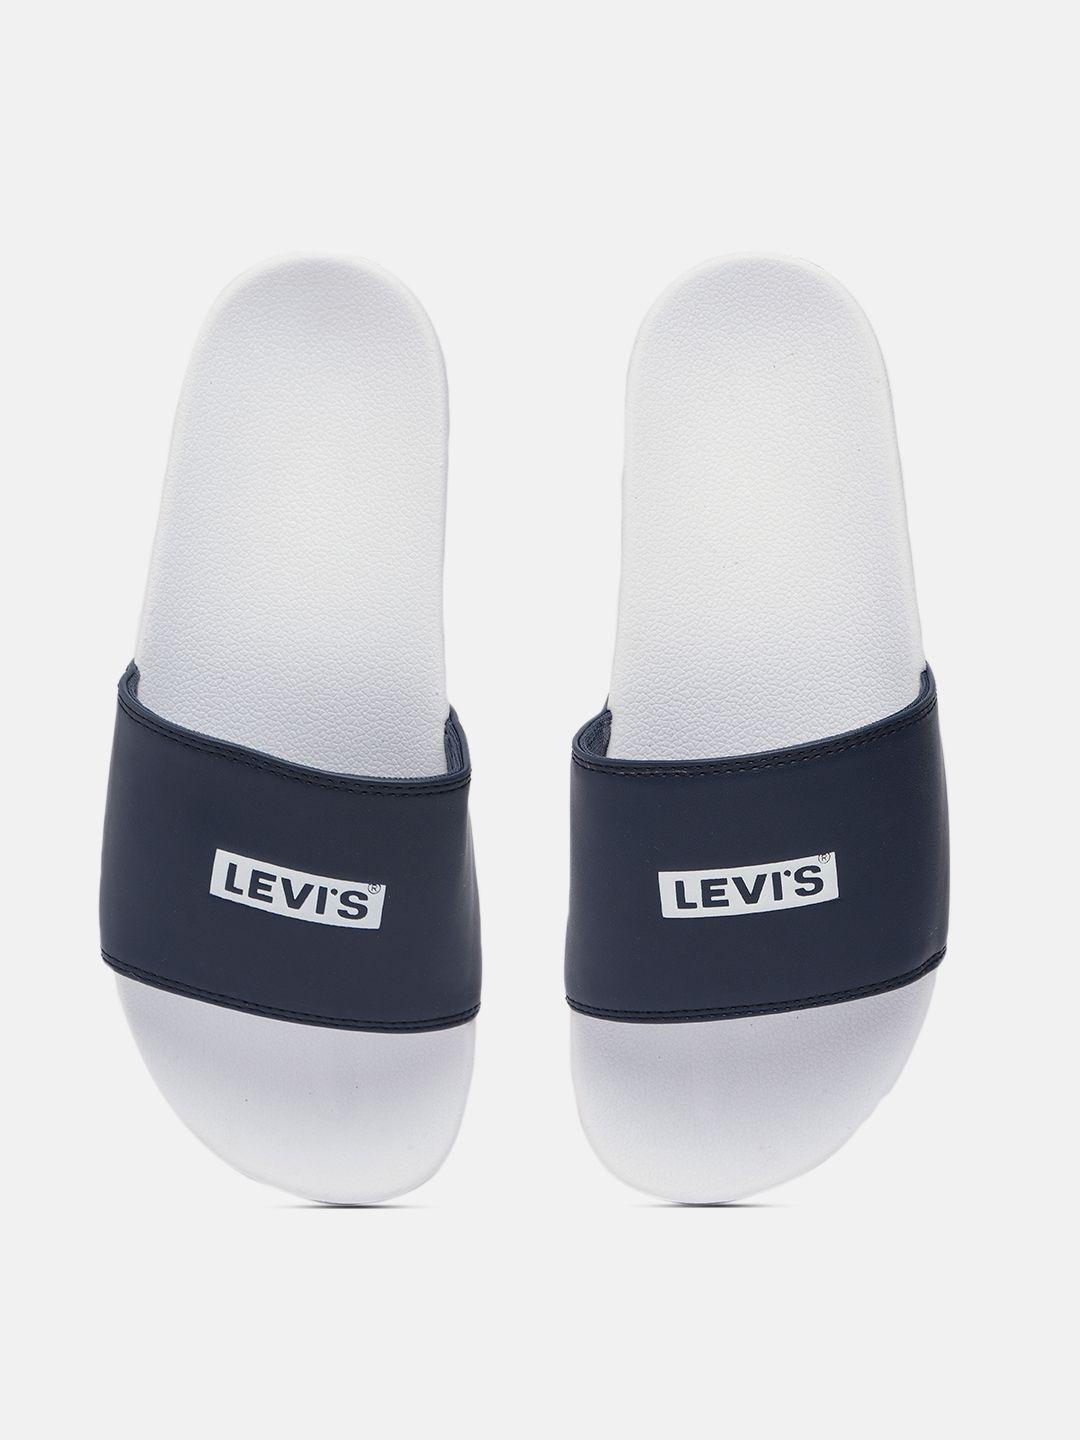 levis men navy blue & white june boxtab brand logo printed sliders